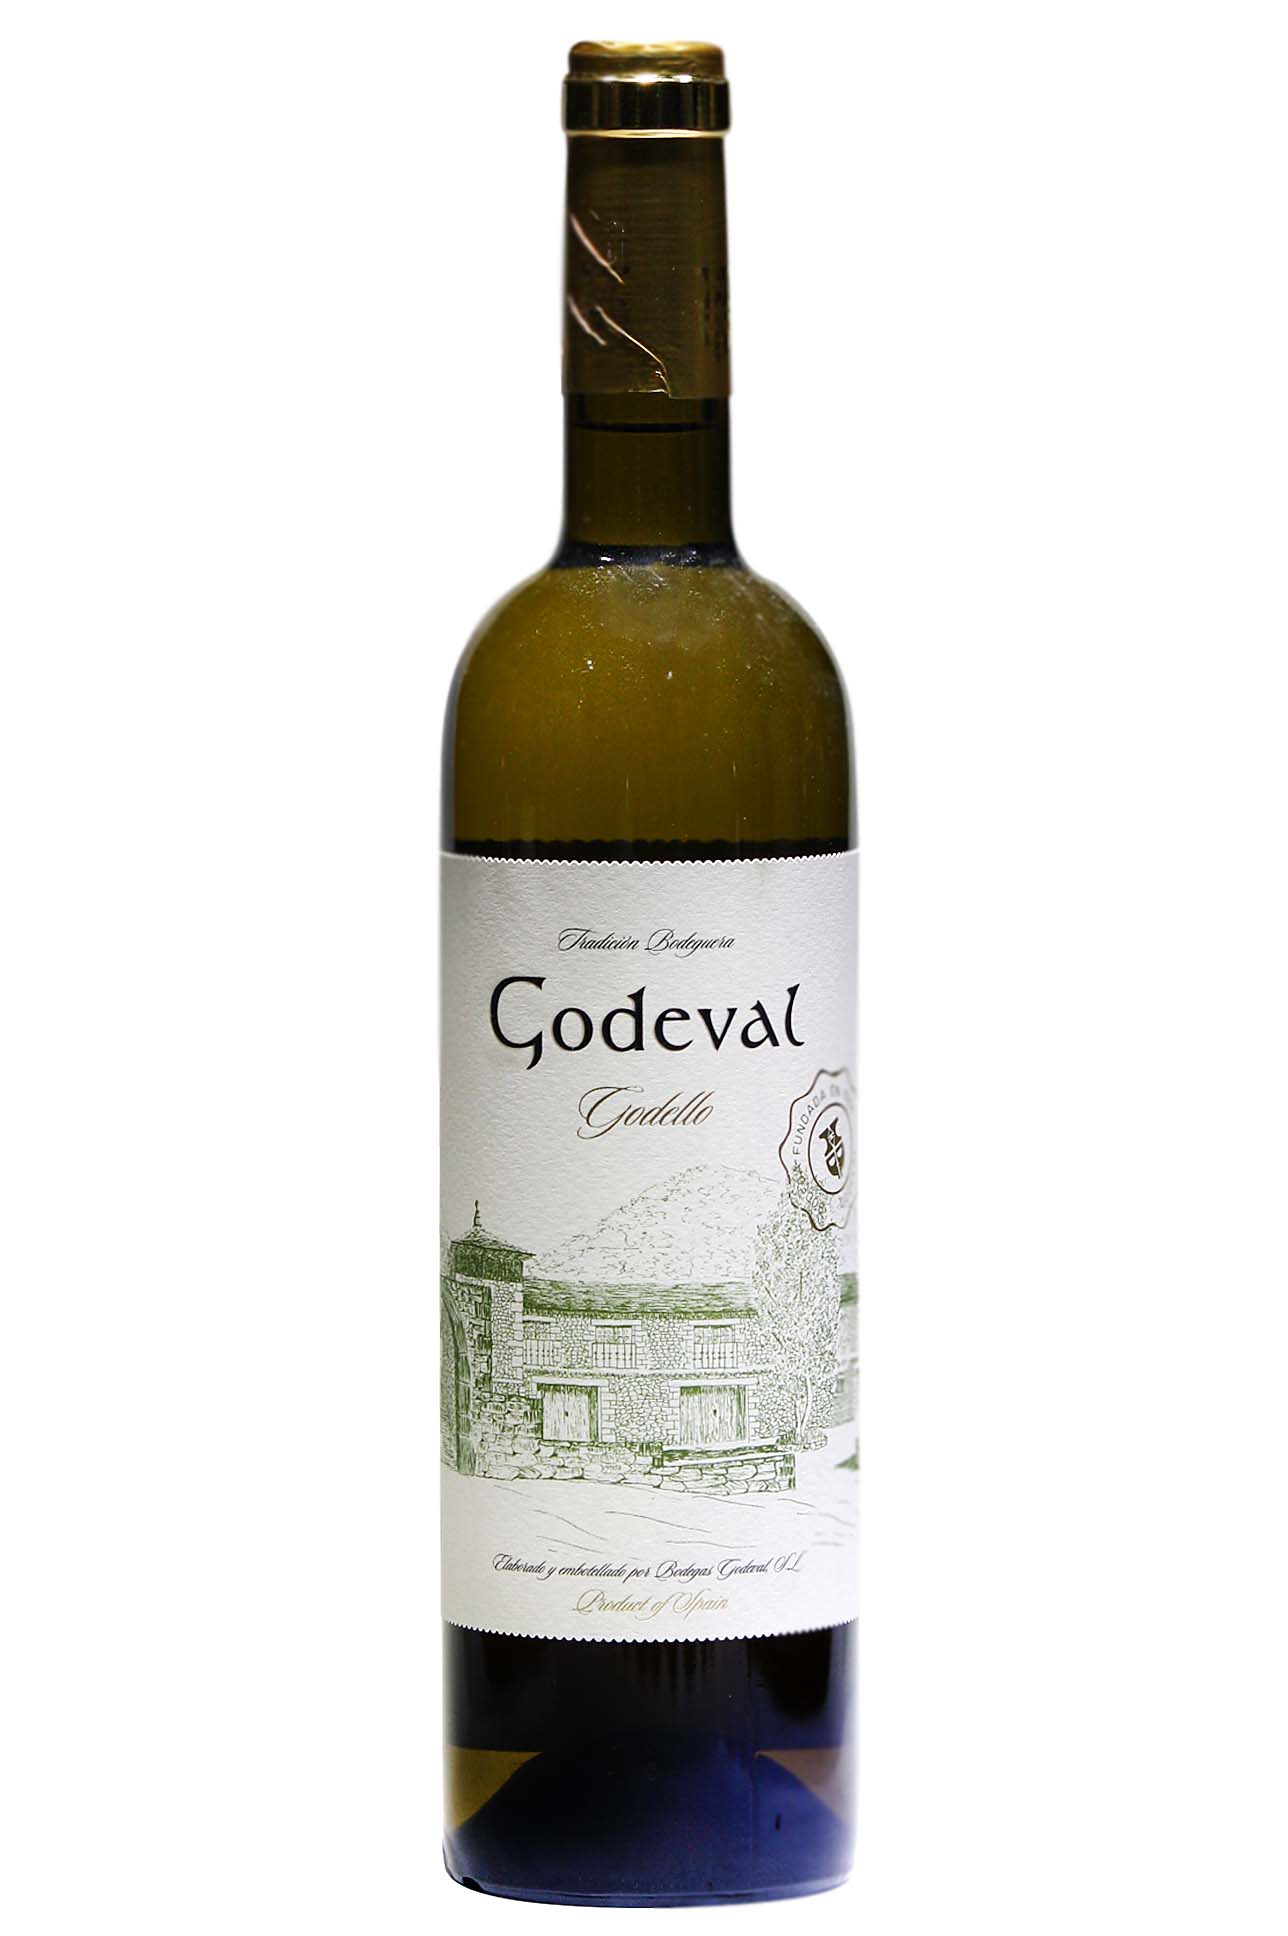 Godeval white wine